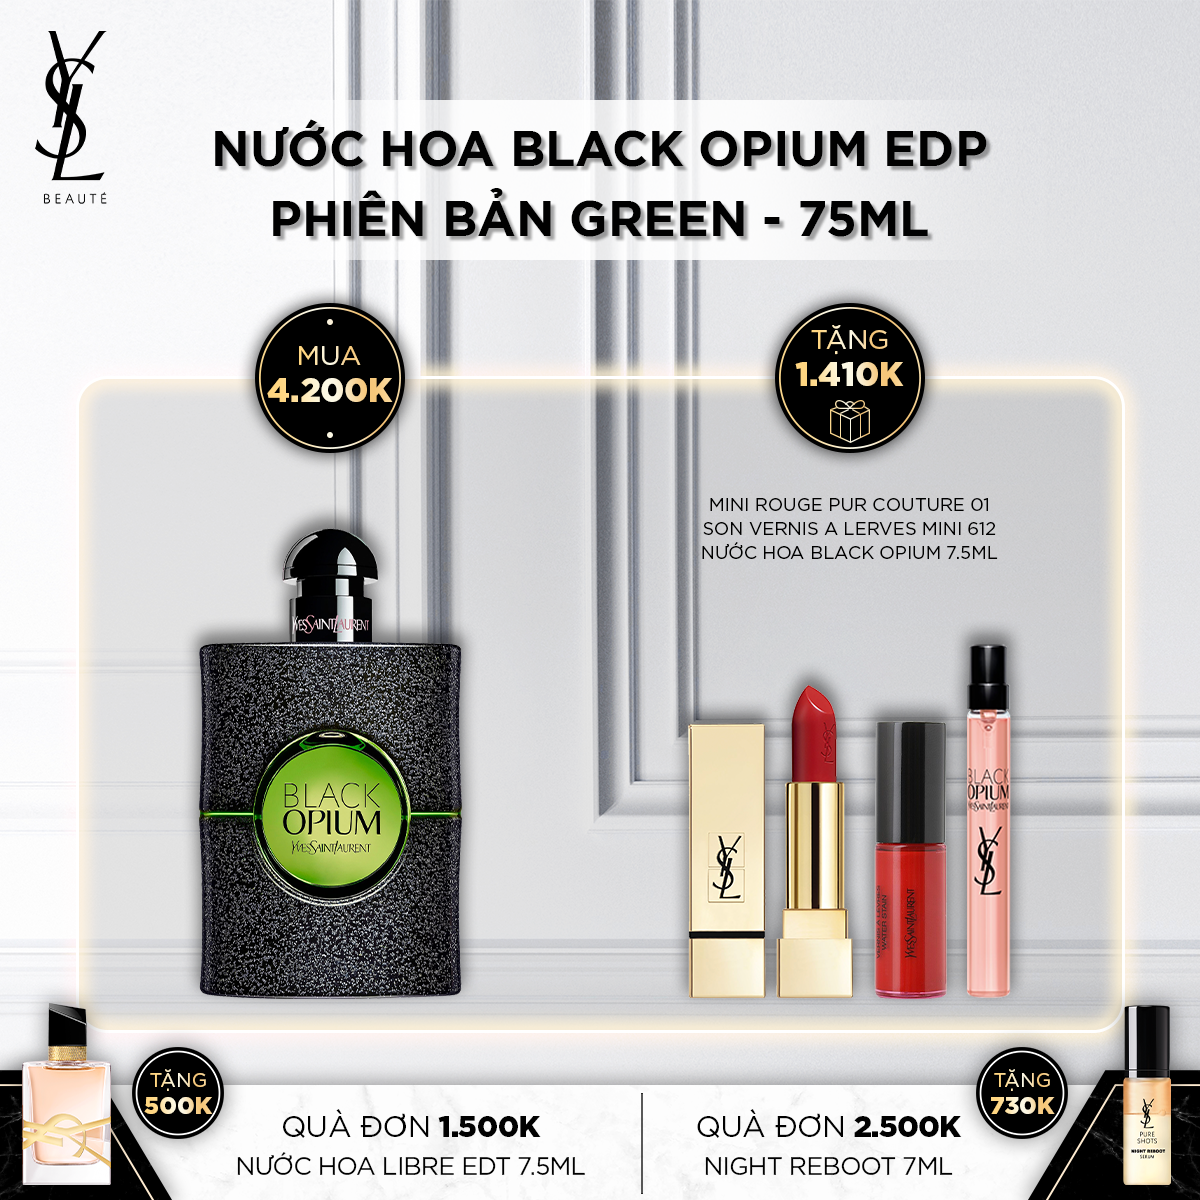 Nước Hoa Gợi Cảm Black Opium EDP phiên bản GREEN 75ml